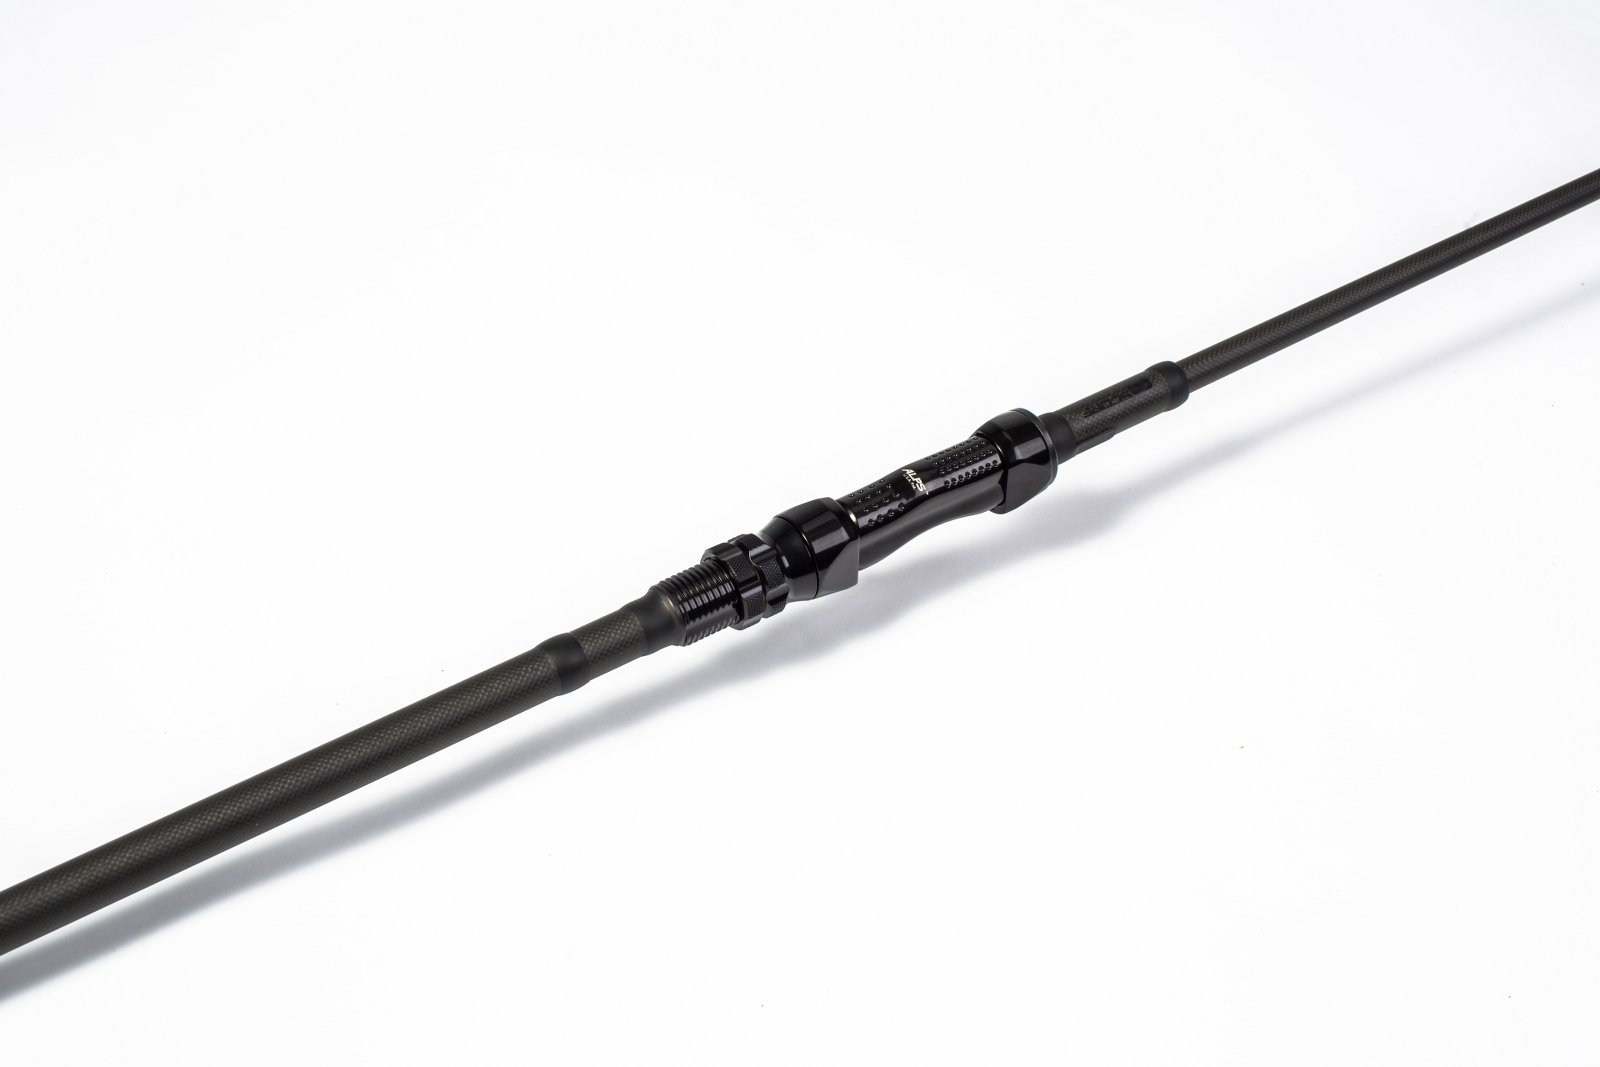 Nash Scope Black Ops 9ft 3.5lb Scope Rods Tackle T1724 International Shop Europe